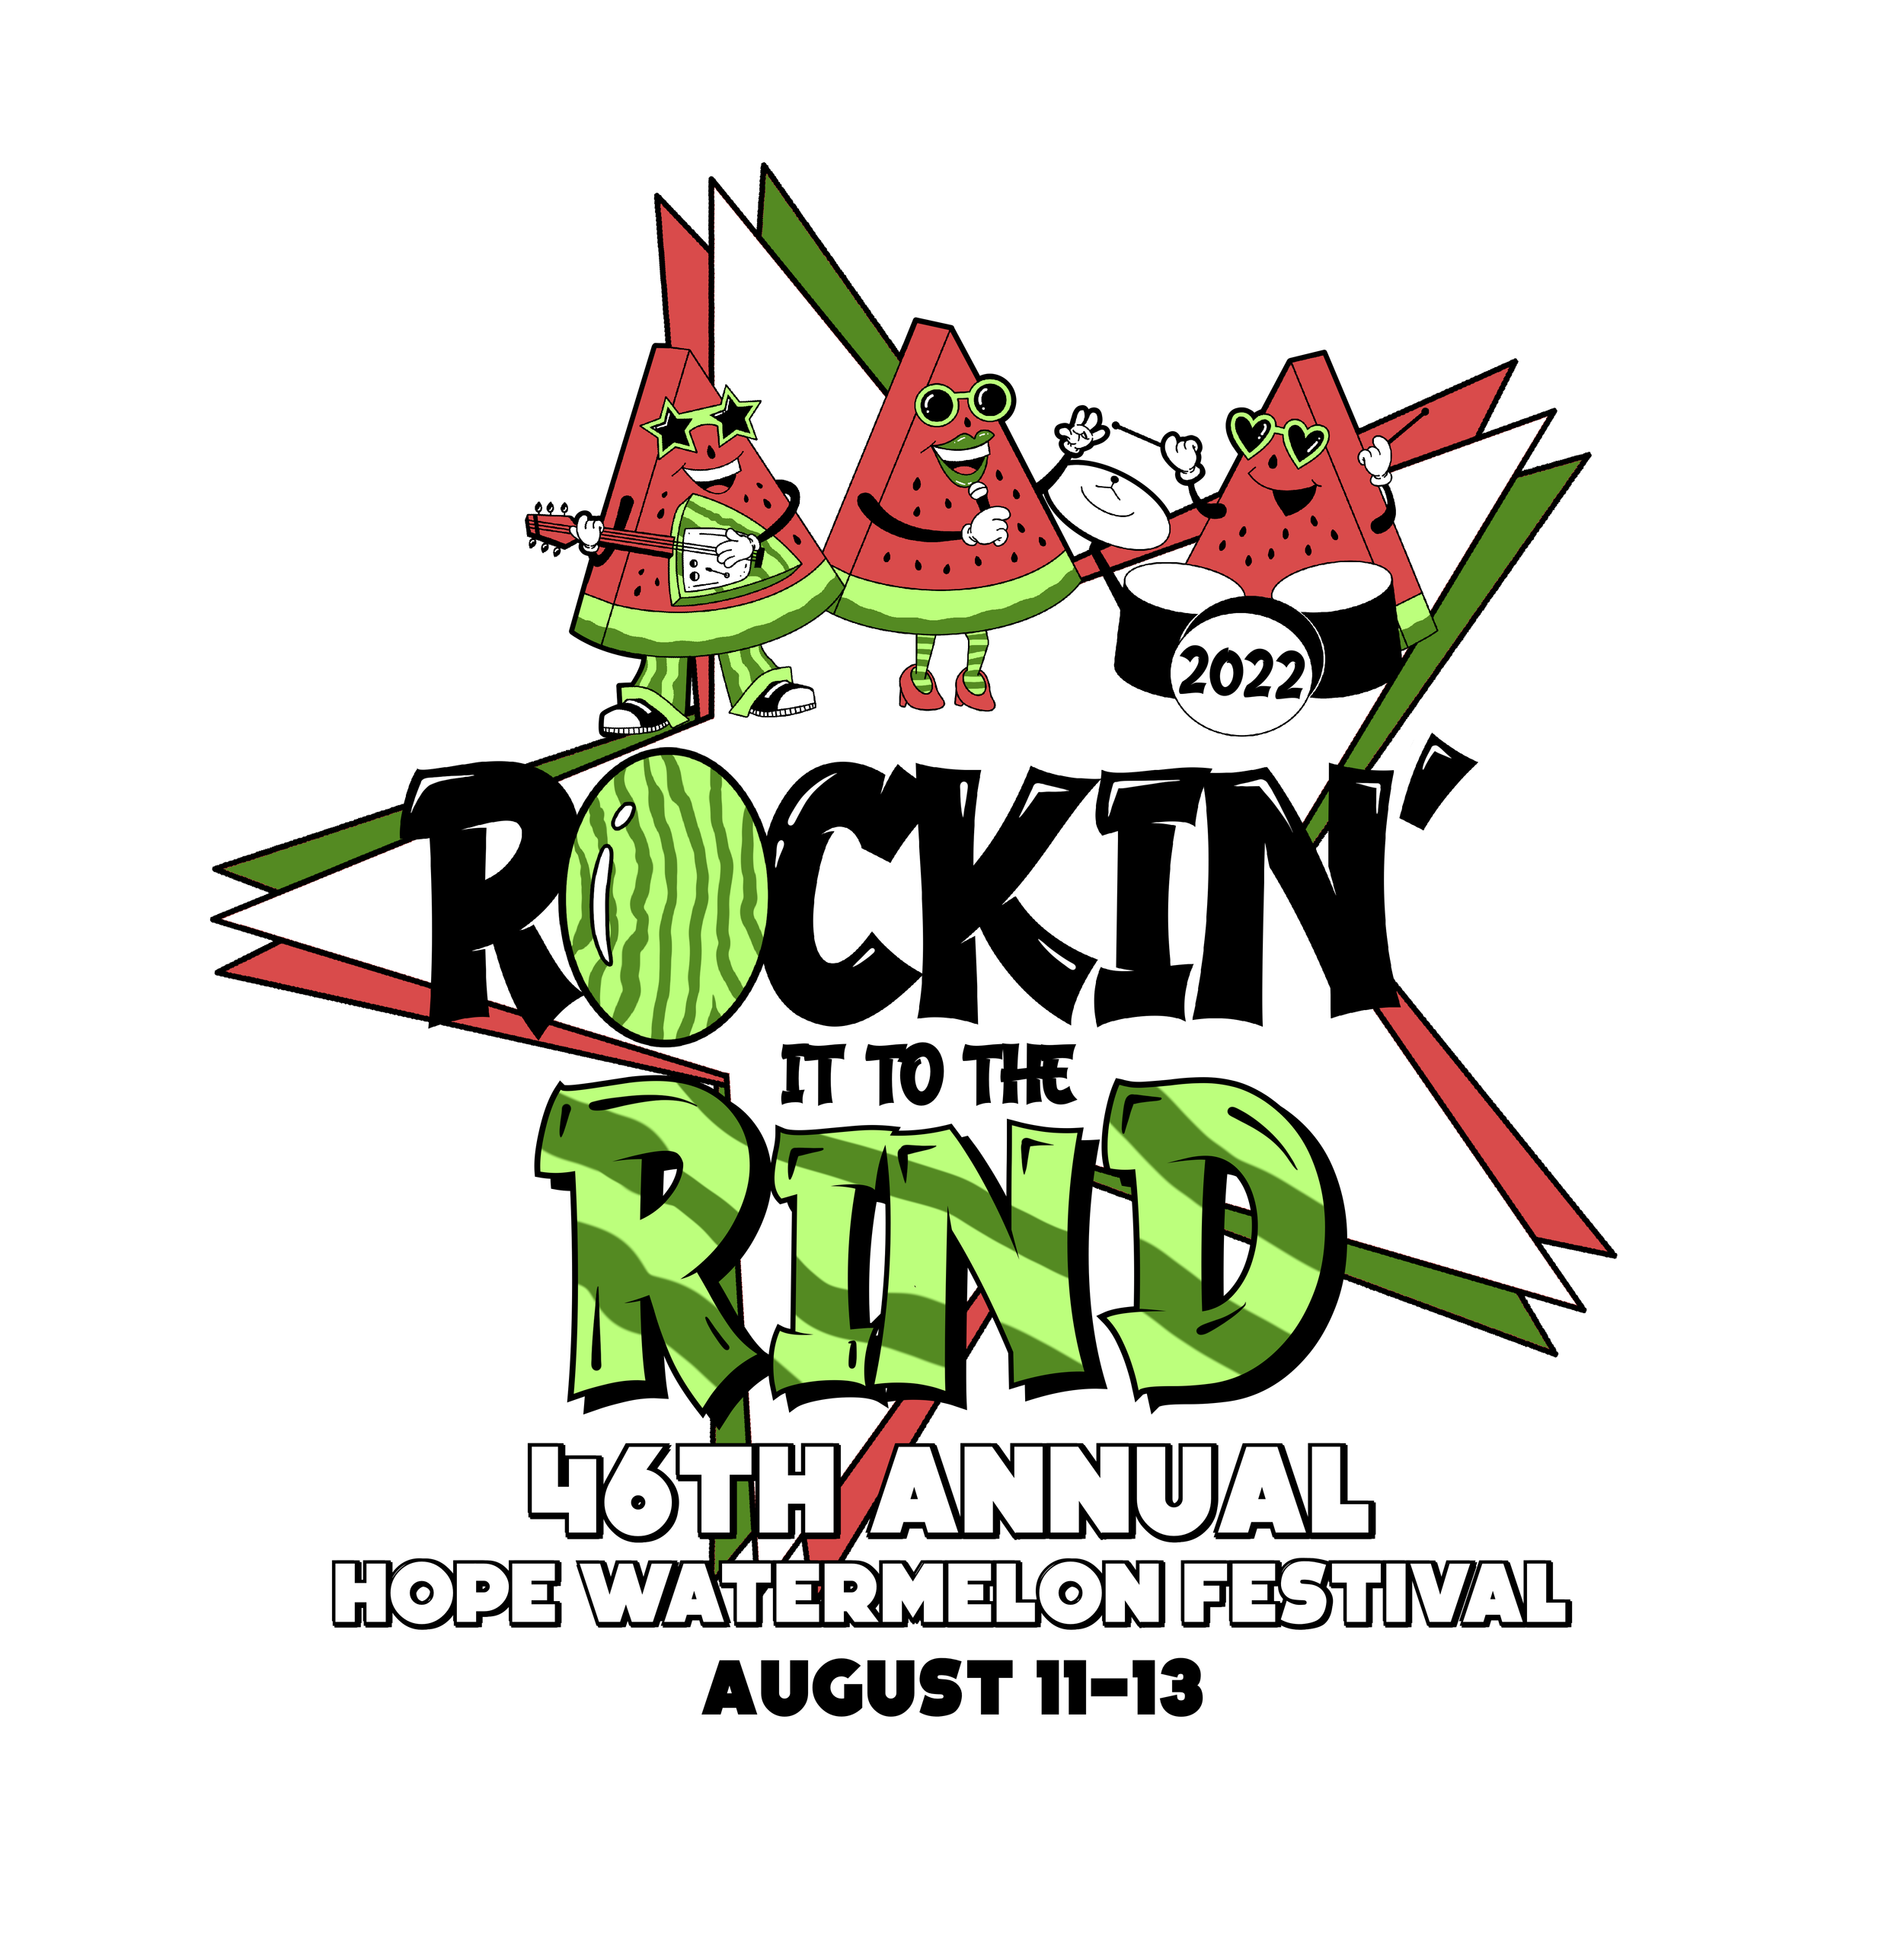 46th Annual Hope Watermelon Festival August 1113. Theme"Rockin' It